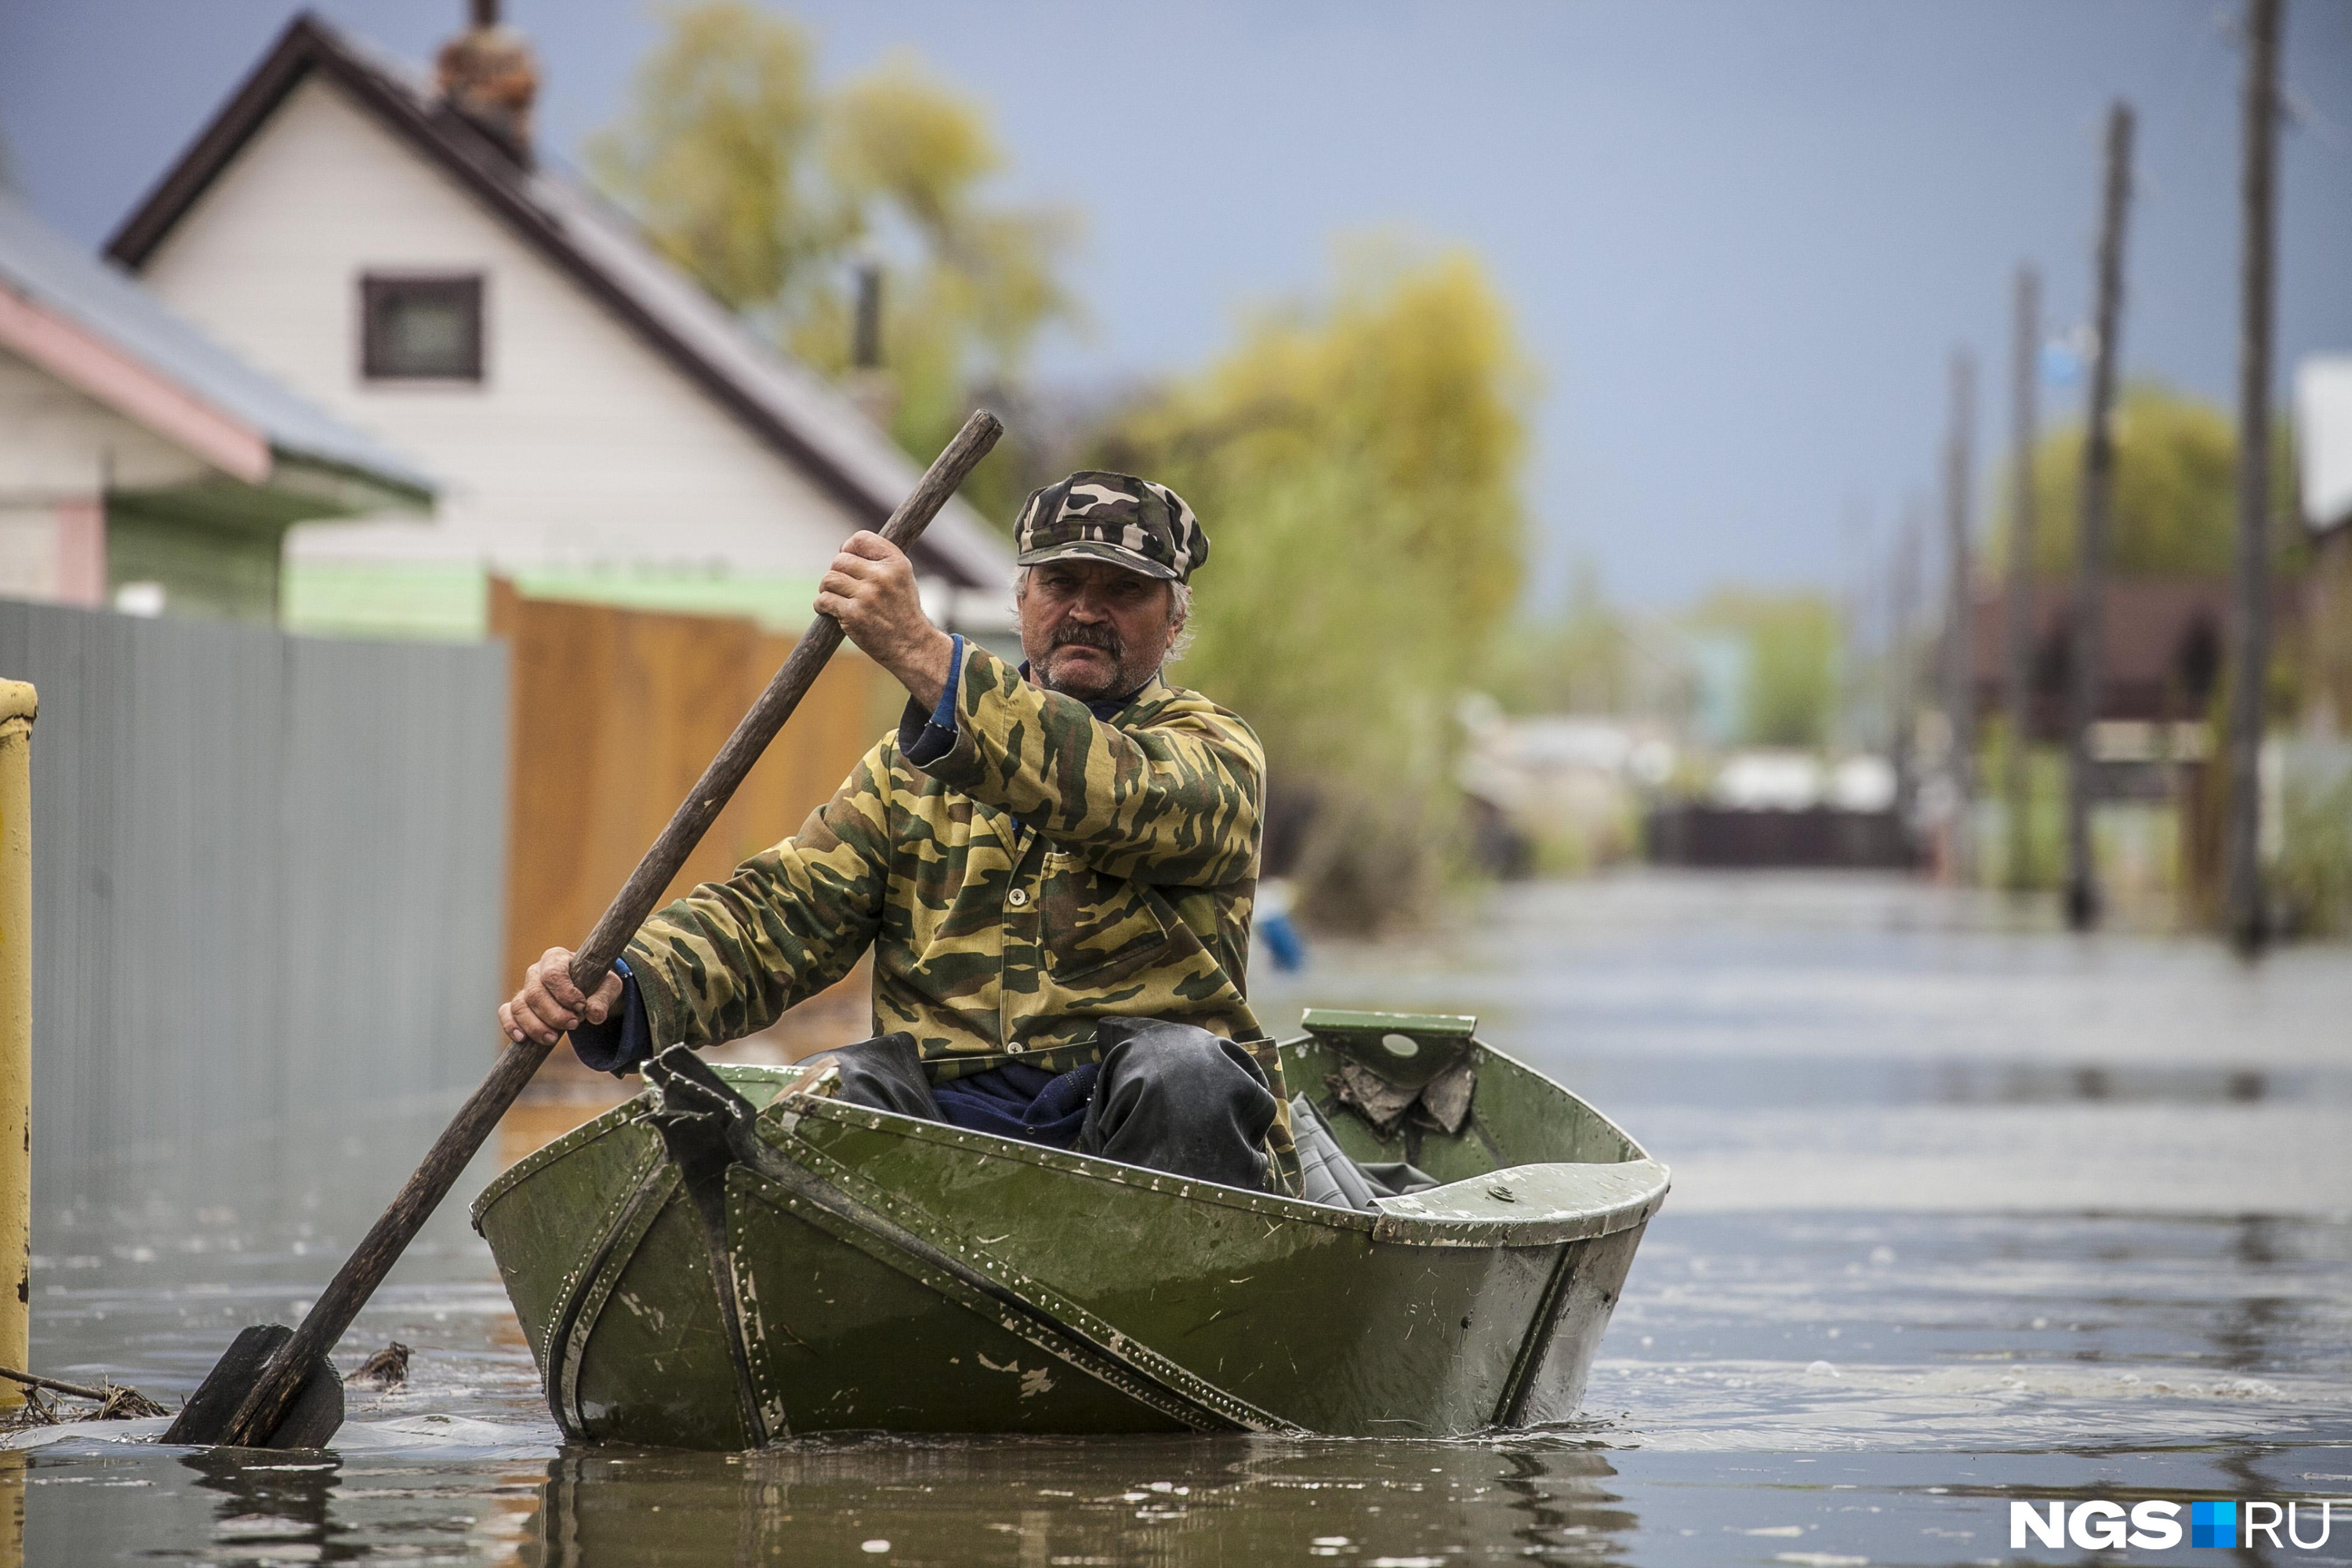 Укреплена дамба, затоплено 60 домов — оперативные данные о паводке в Алтайском крае